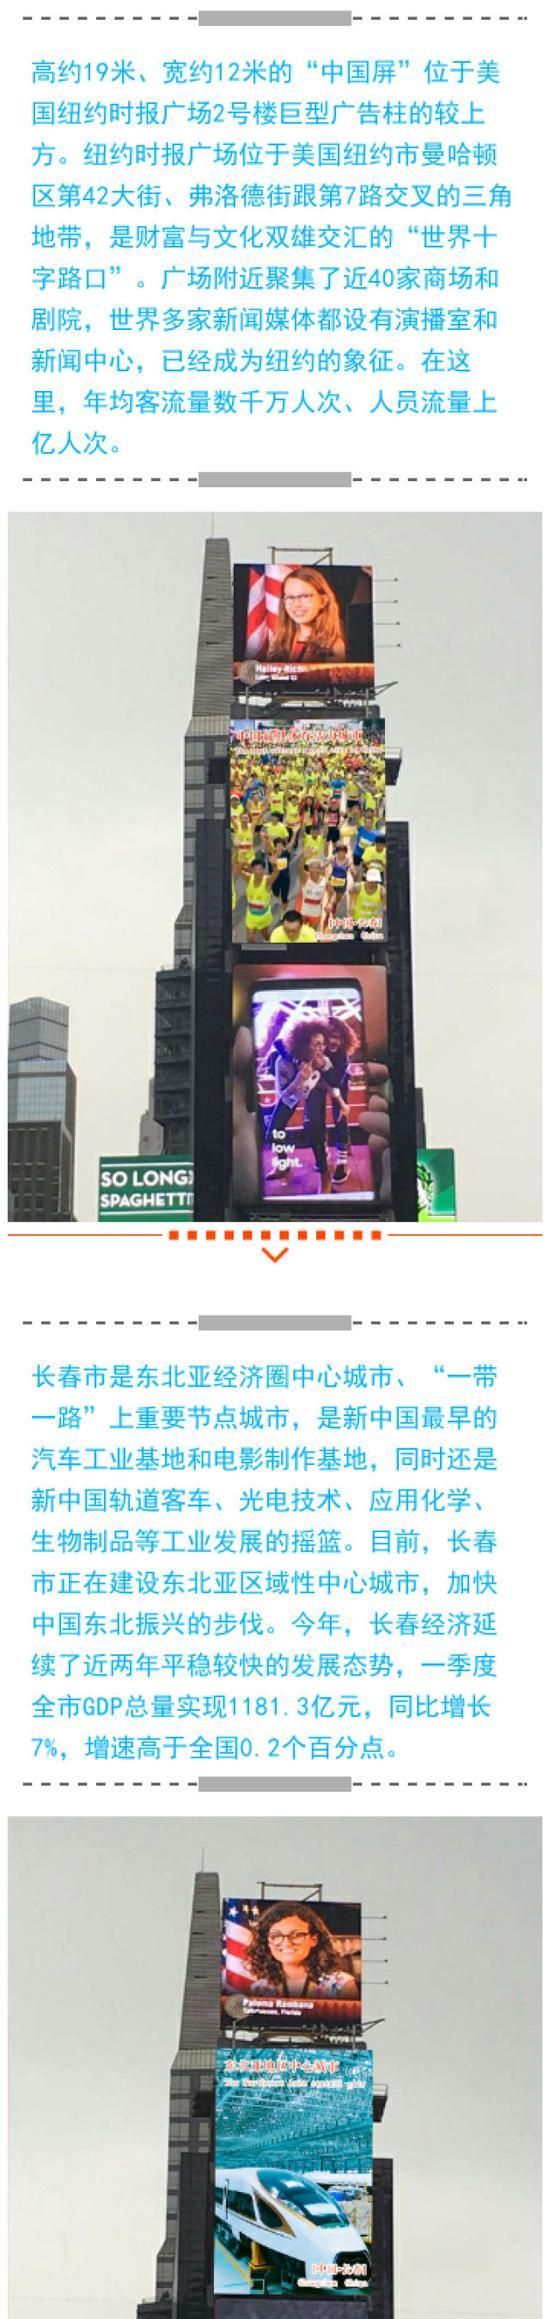 长春城市形象宣传片点亮美国纽约时代广场